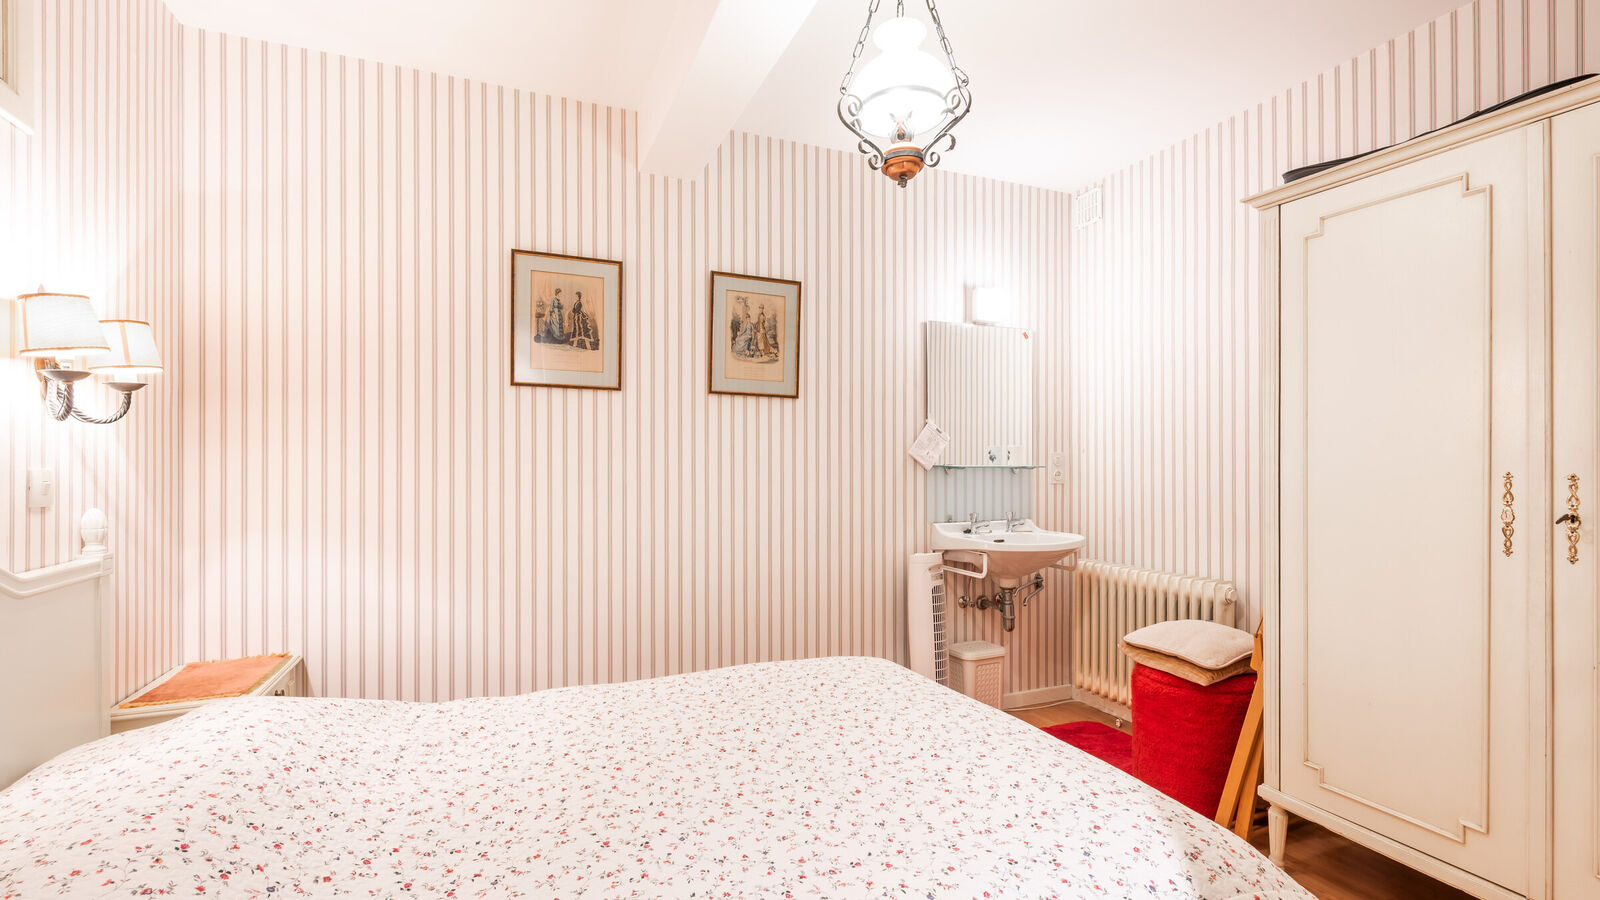 App. 3 bedrooms in Sint-Idesbald